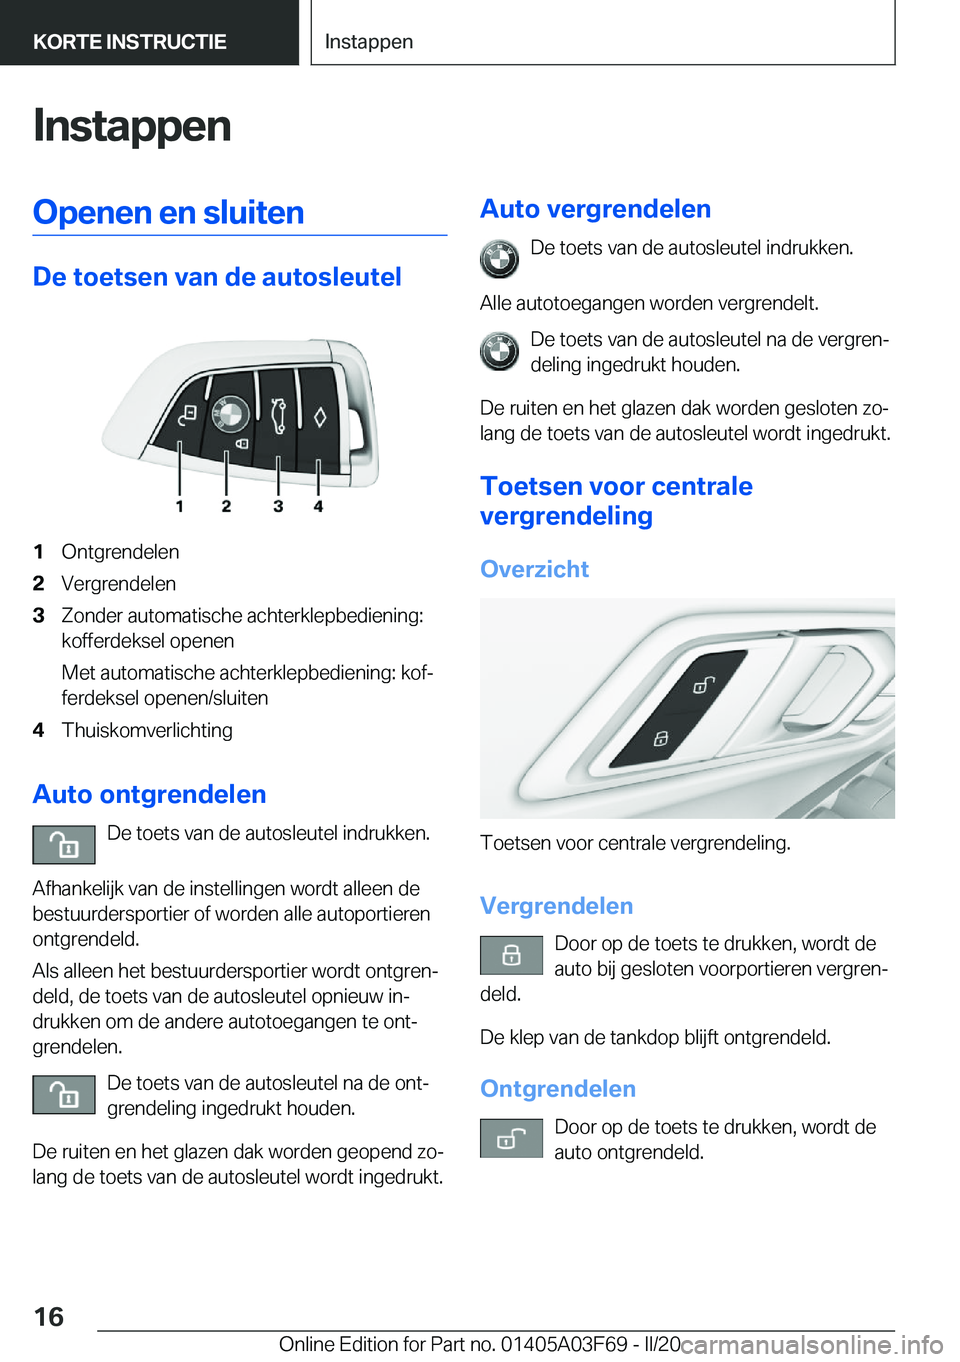 BMW 3 SERIES 2020  Instructieboekjes (in Dutch) �I�n�s�t�a�p�p�e�n�O�p�e�n�e�n��e�n��s�l�u�i�t�e�n
�D�e��t�o�e�t�s�e�n��v�a�n��d�e��a�u�t�o�s�l�e�u�t�e�l
�1�O�n�t�g�r�e�n�d�e�l�e�n�2�V�e�r�g�r�e�n�d�e�l�e�n�3�Z�o�n�d�e�r��a�u�t�o�m�a�t�i�s�c